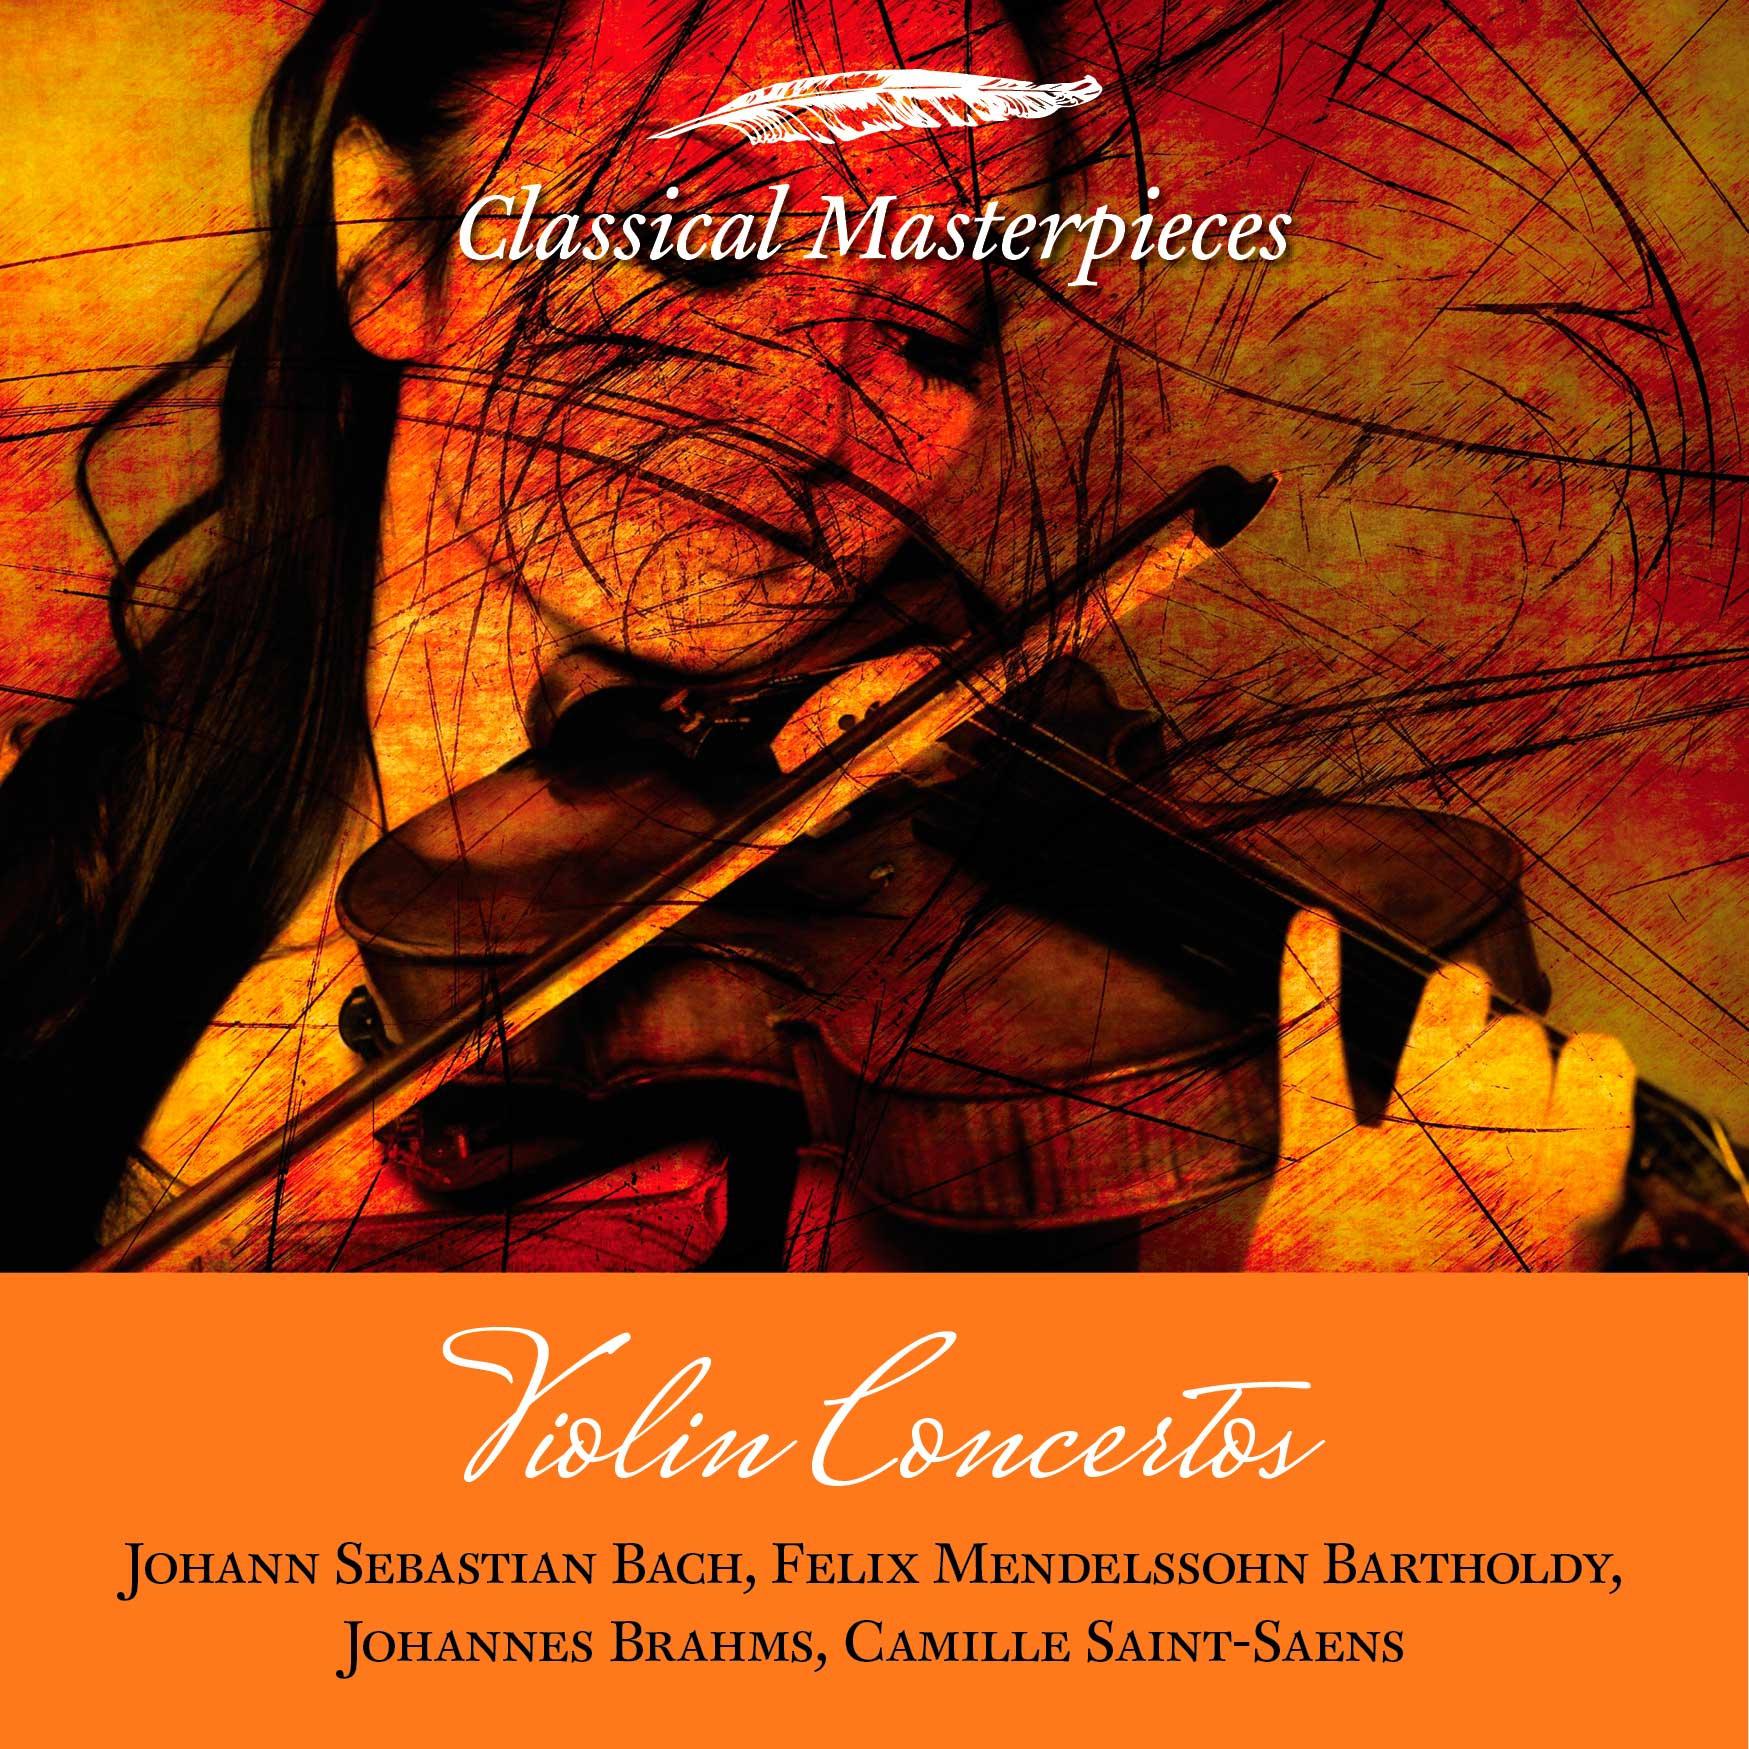 Concerto for Violin & Violoncello in A minor, op. 102:Vivace non troppo